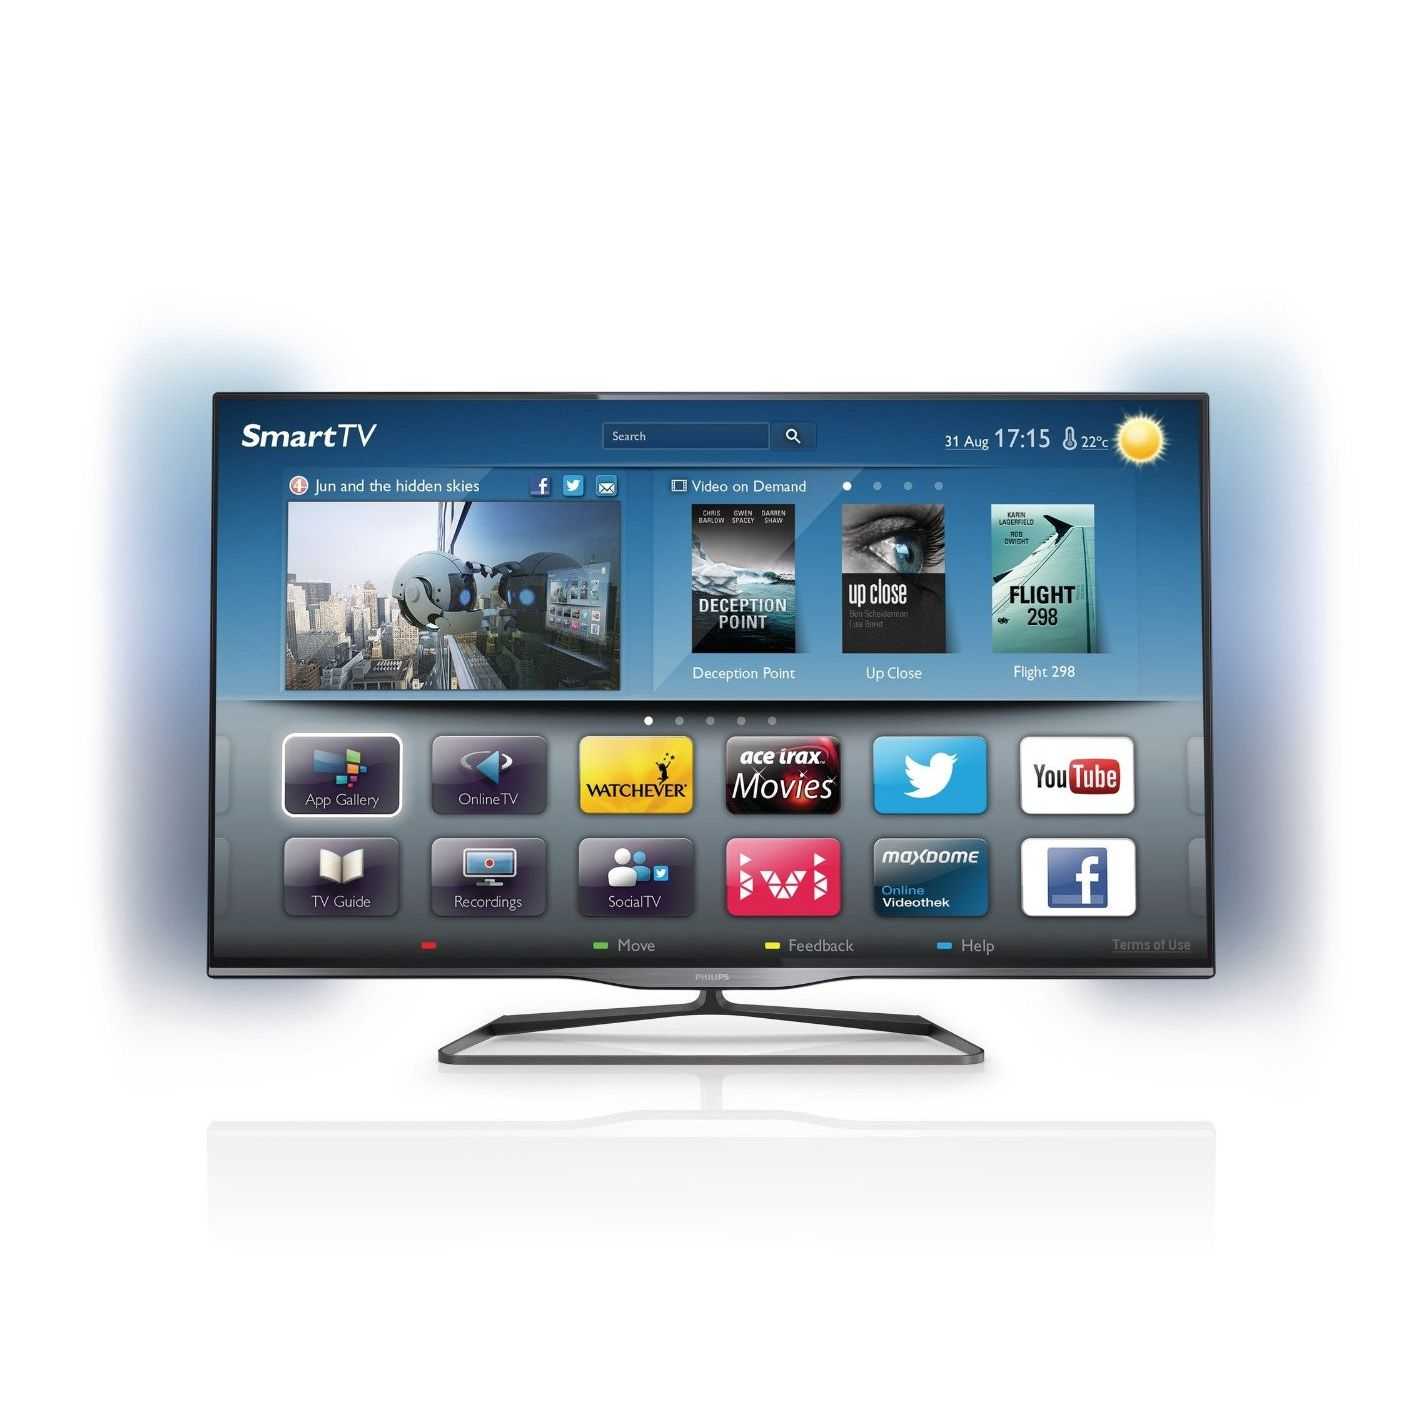 Philips 46pfl4508h - купить , скидки, цена, отзывы, обзор, характеристики - телевизоры